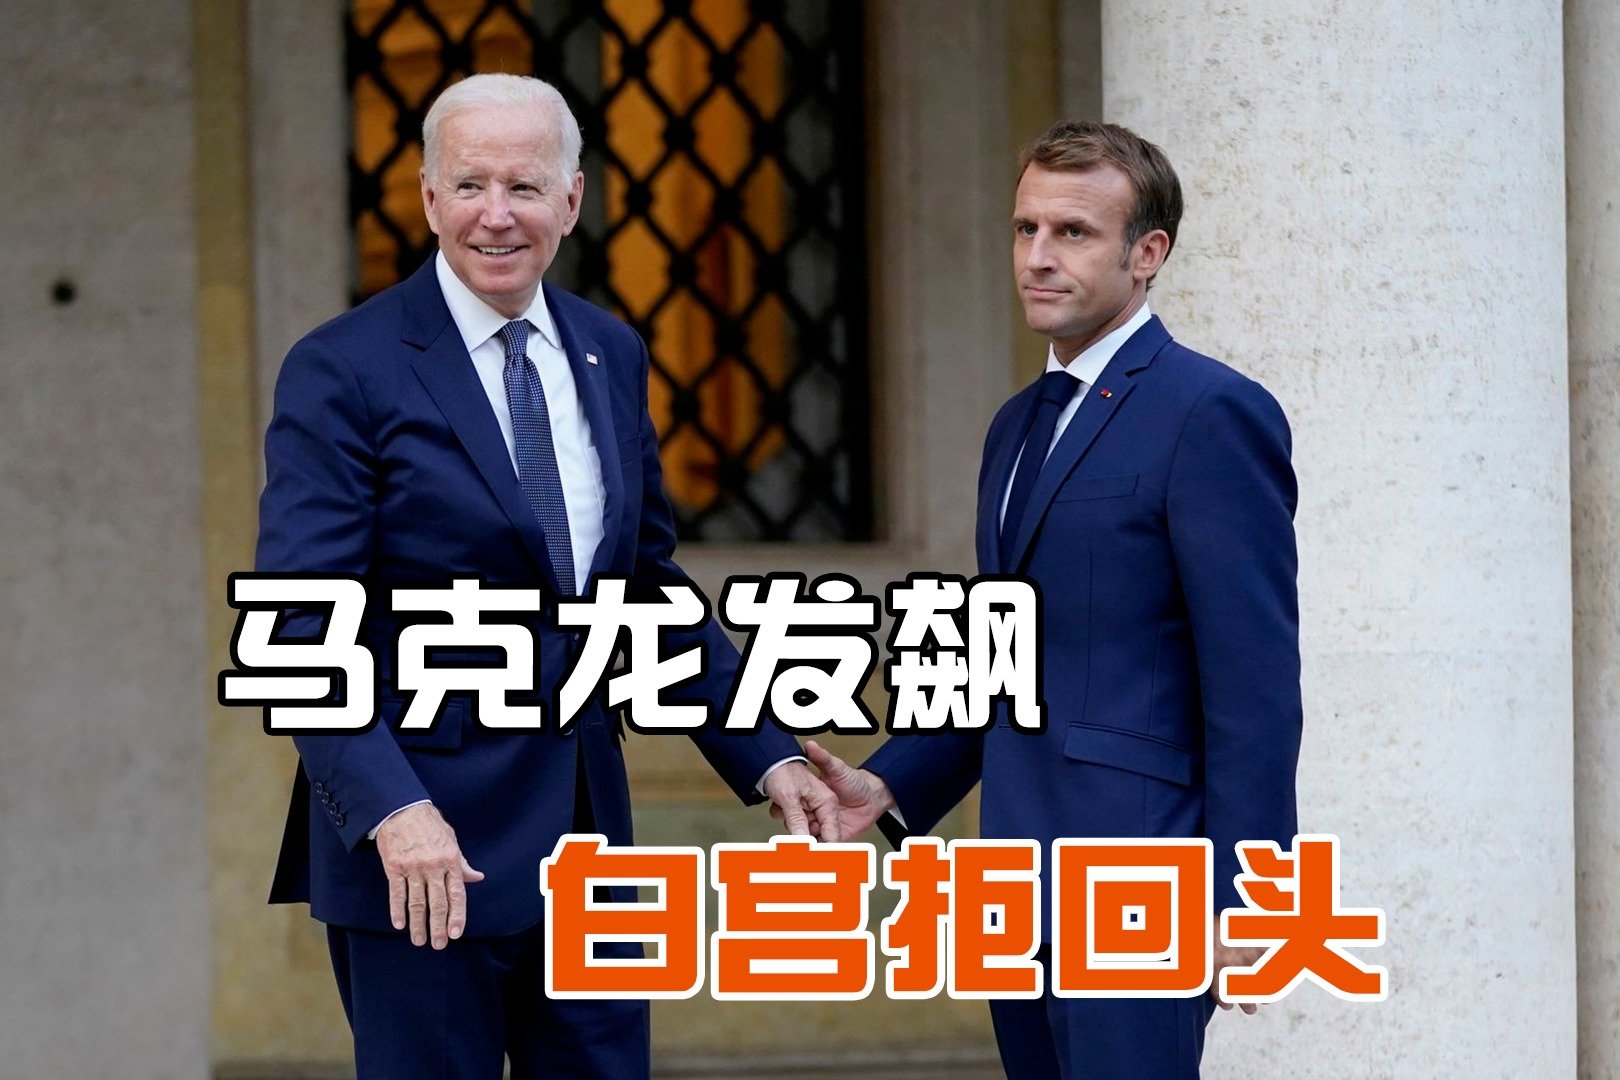 法国总统马克龙电视讲话引发巨大争议 遭反对党派批评和谴责_凤凰网视频_凤凰网